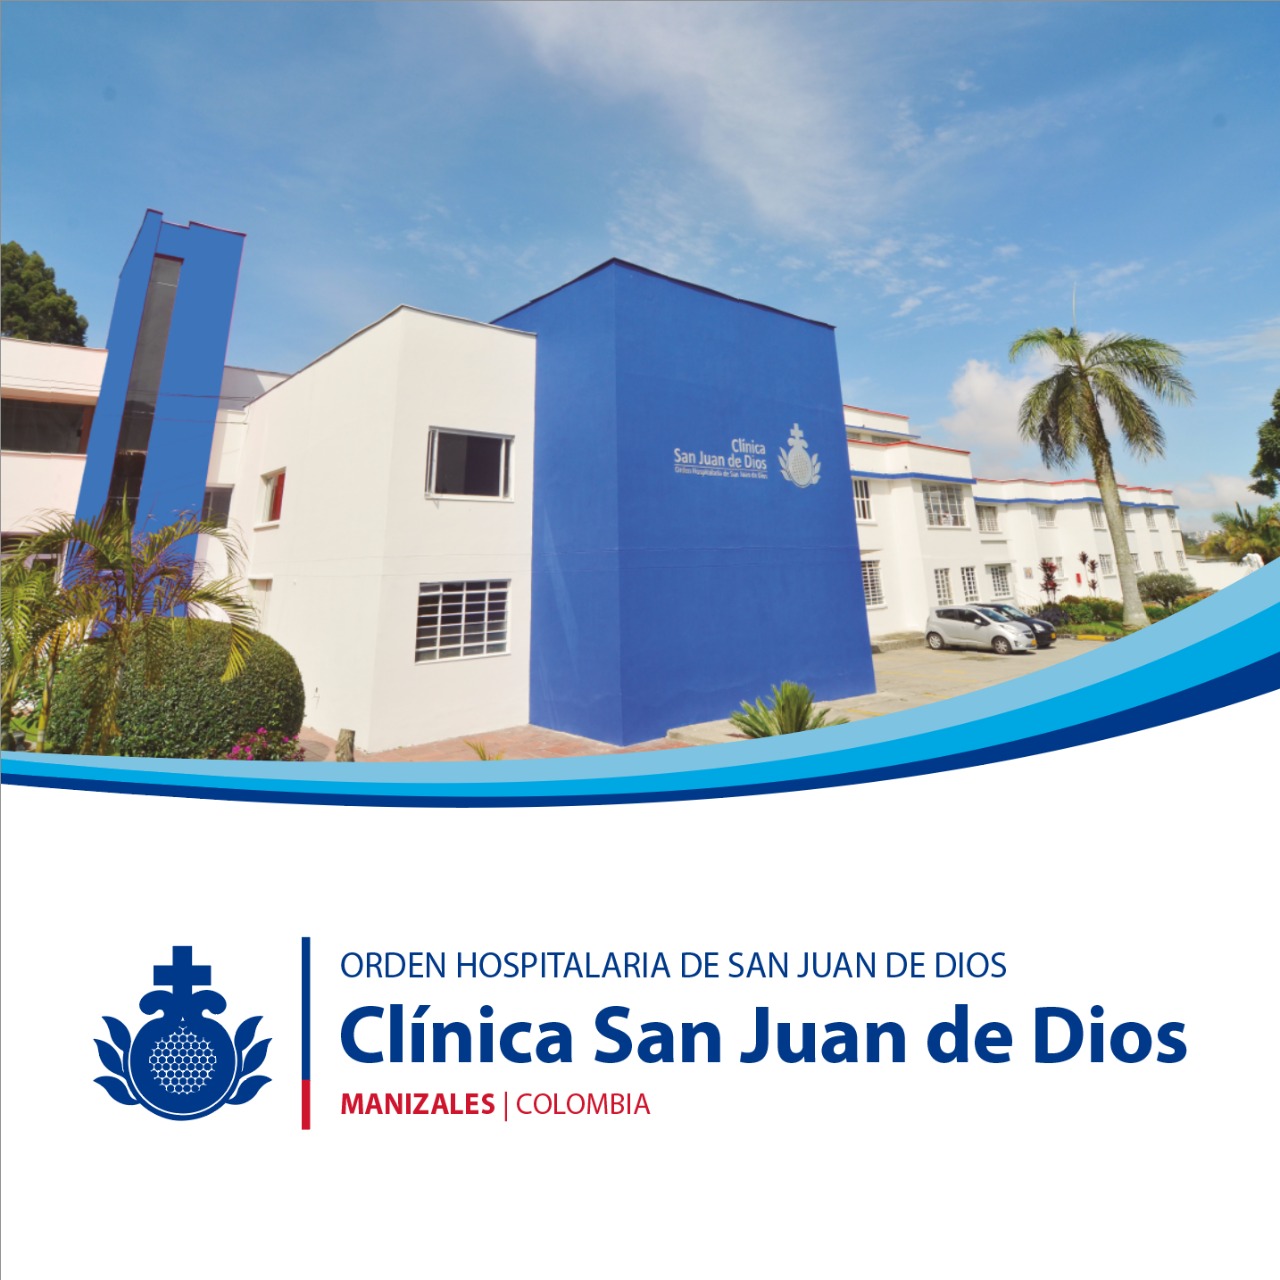 Centro Colombia Clinica San JUan de Dios | Orden Hospitalaria San Juan de Dios